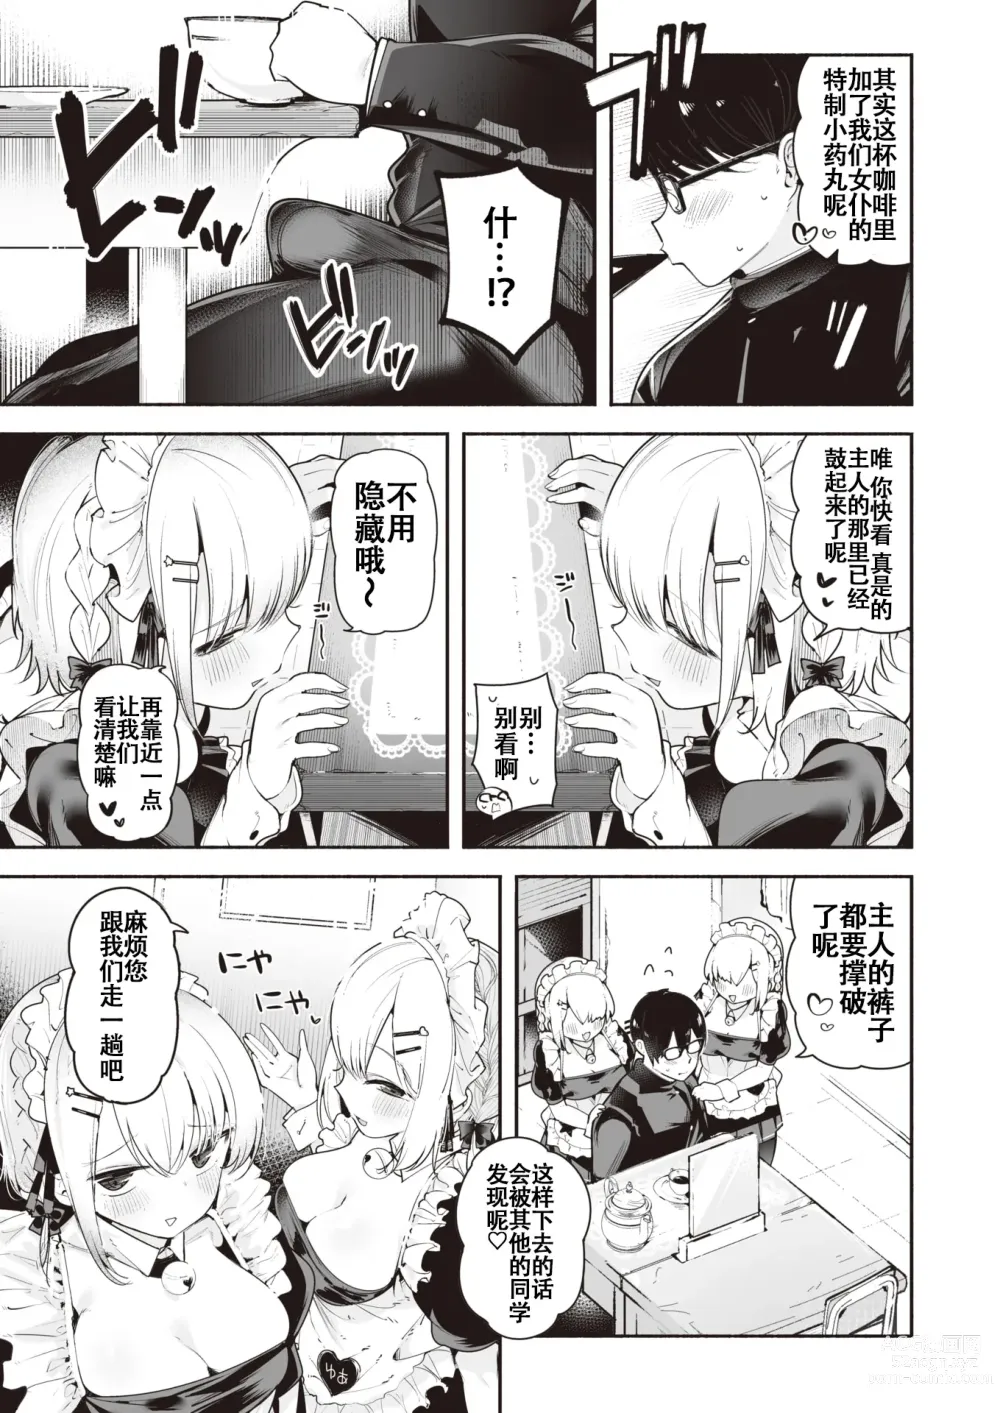 Page 5 of manga 后辈女仆之双胞胎雌小鬼